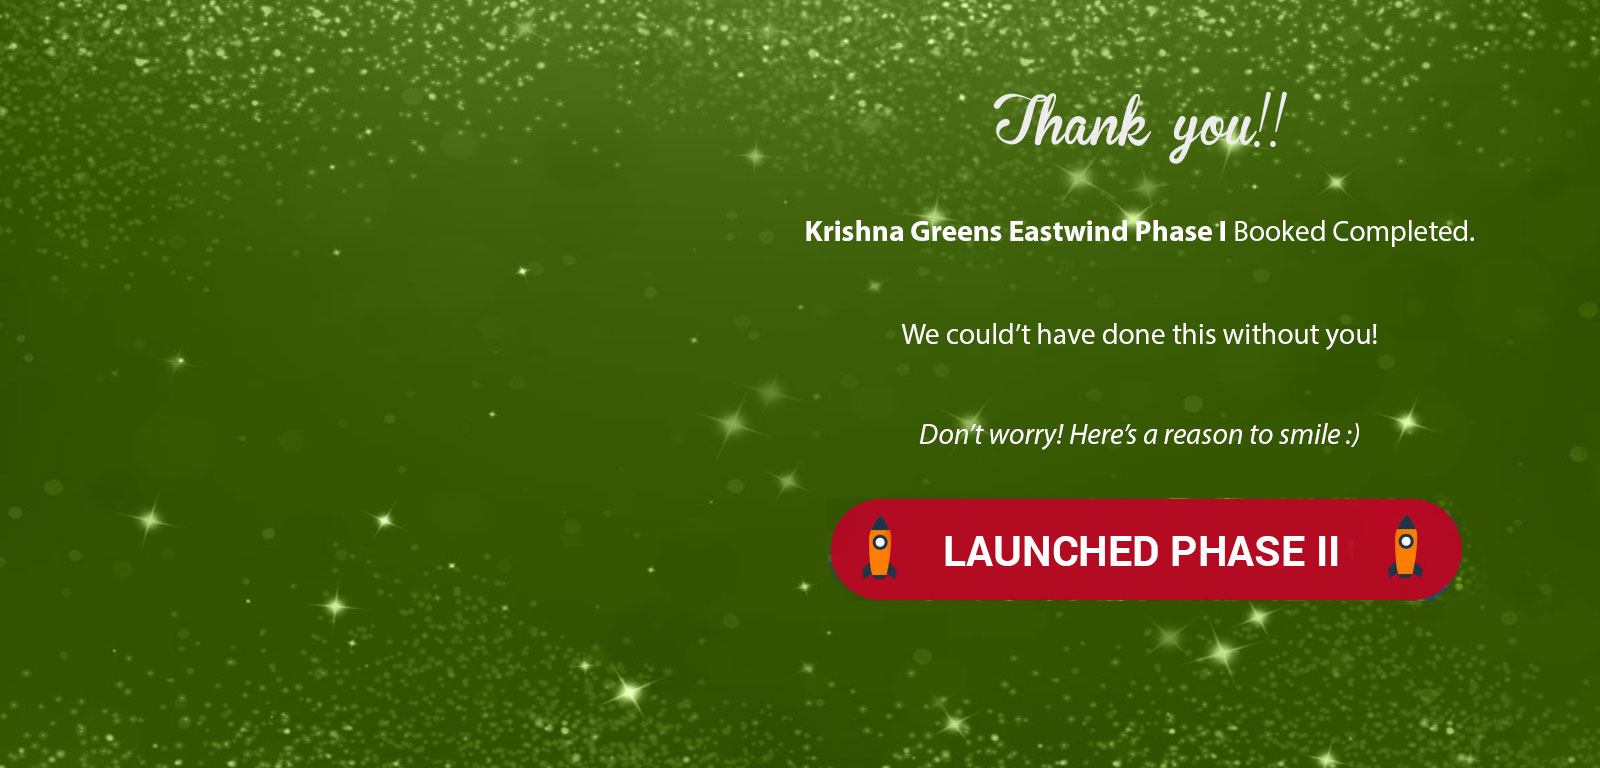 Krishna Greens Eastwind Phase I